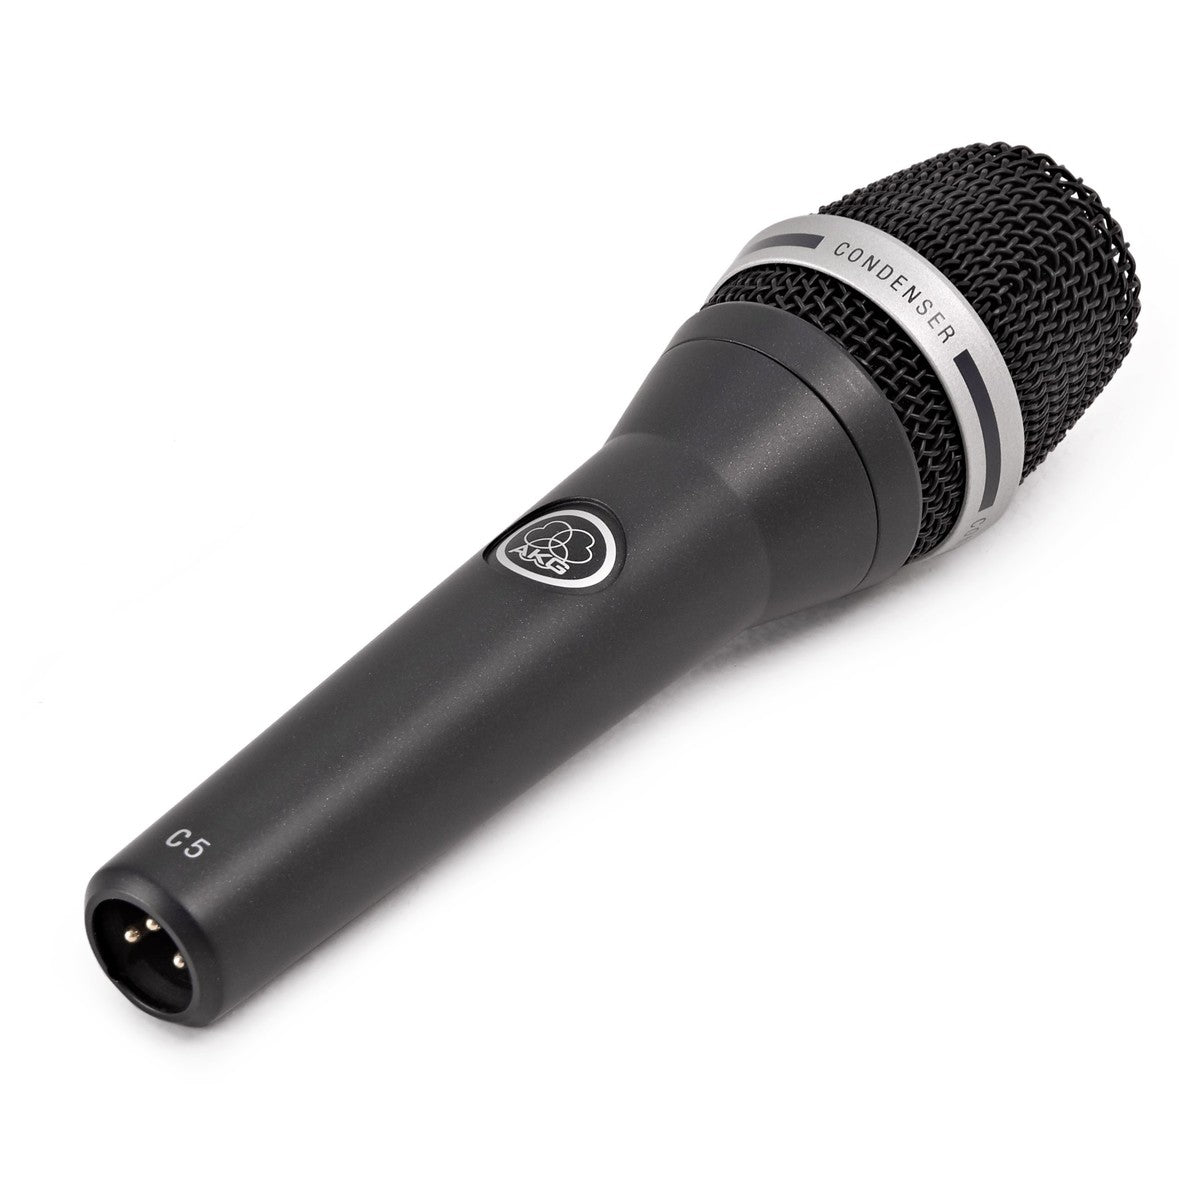 Microfone AKG C5 PROFESSIONAL VOCAL CONDENSER